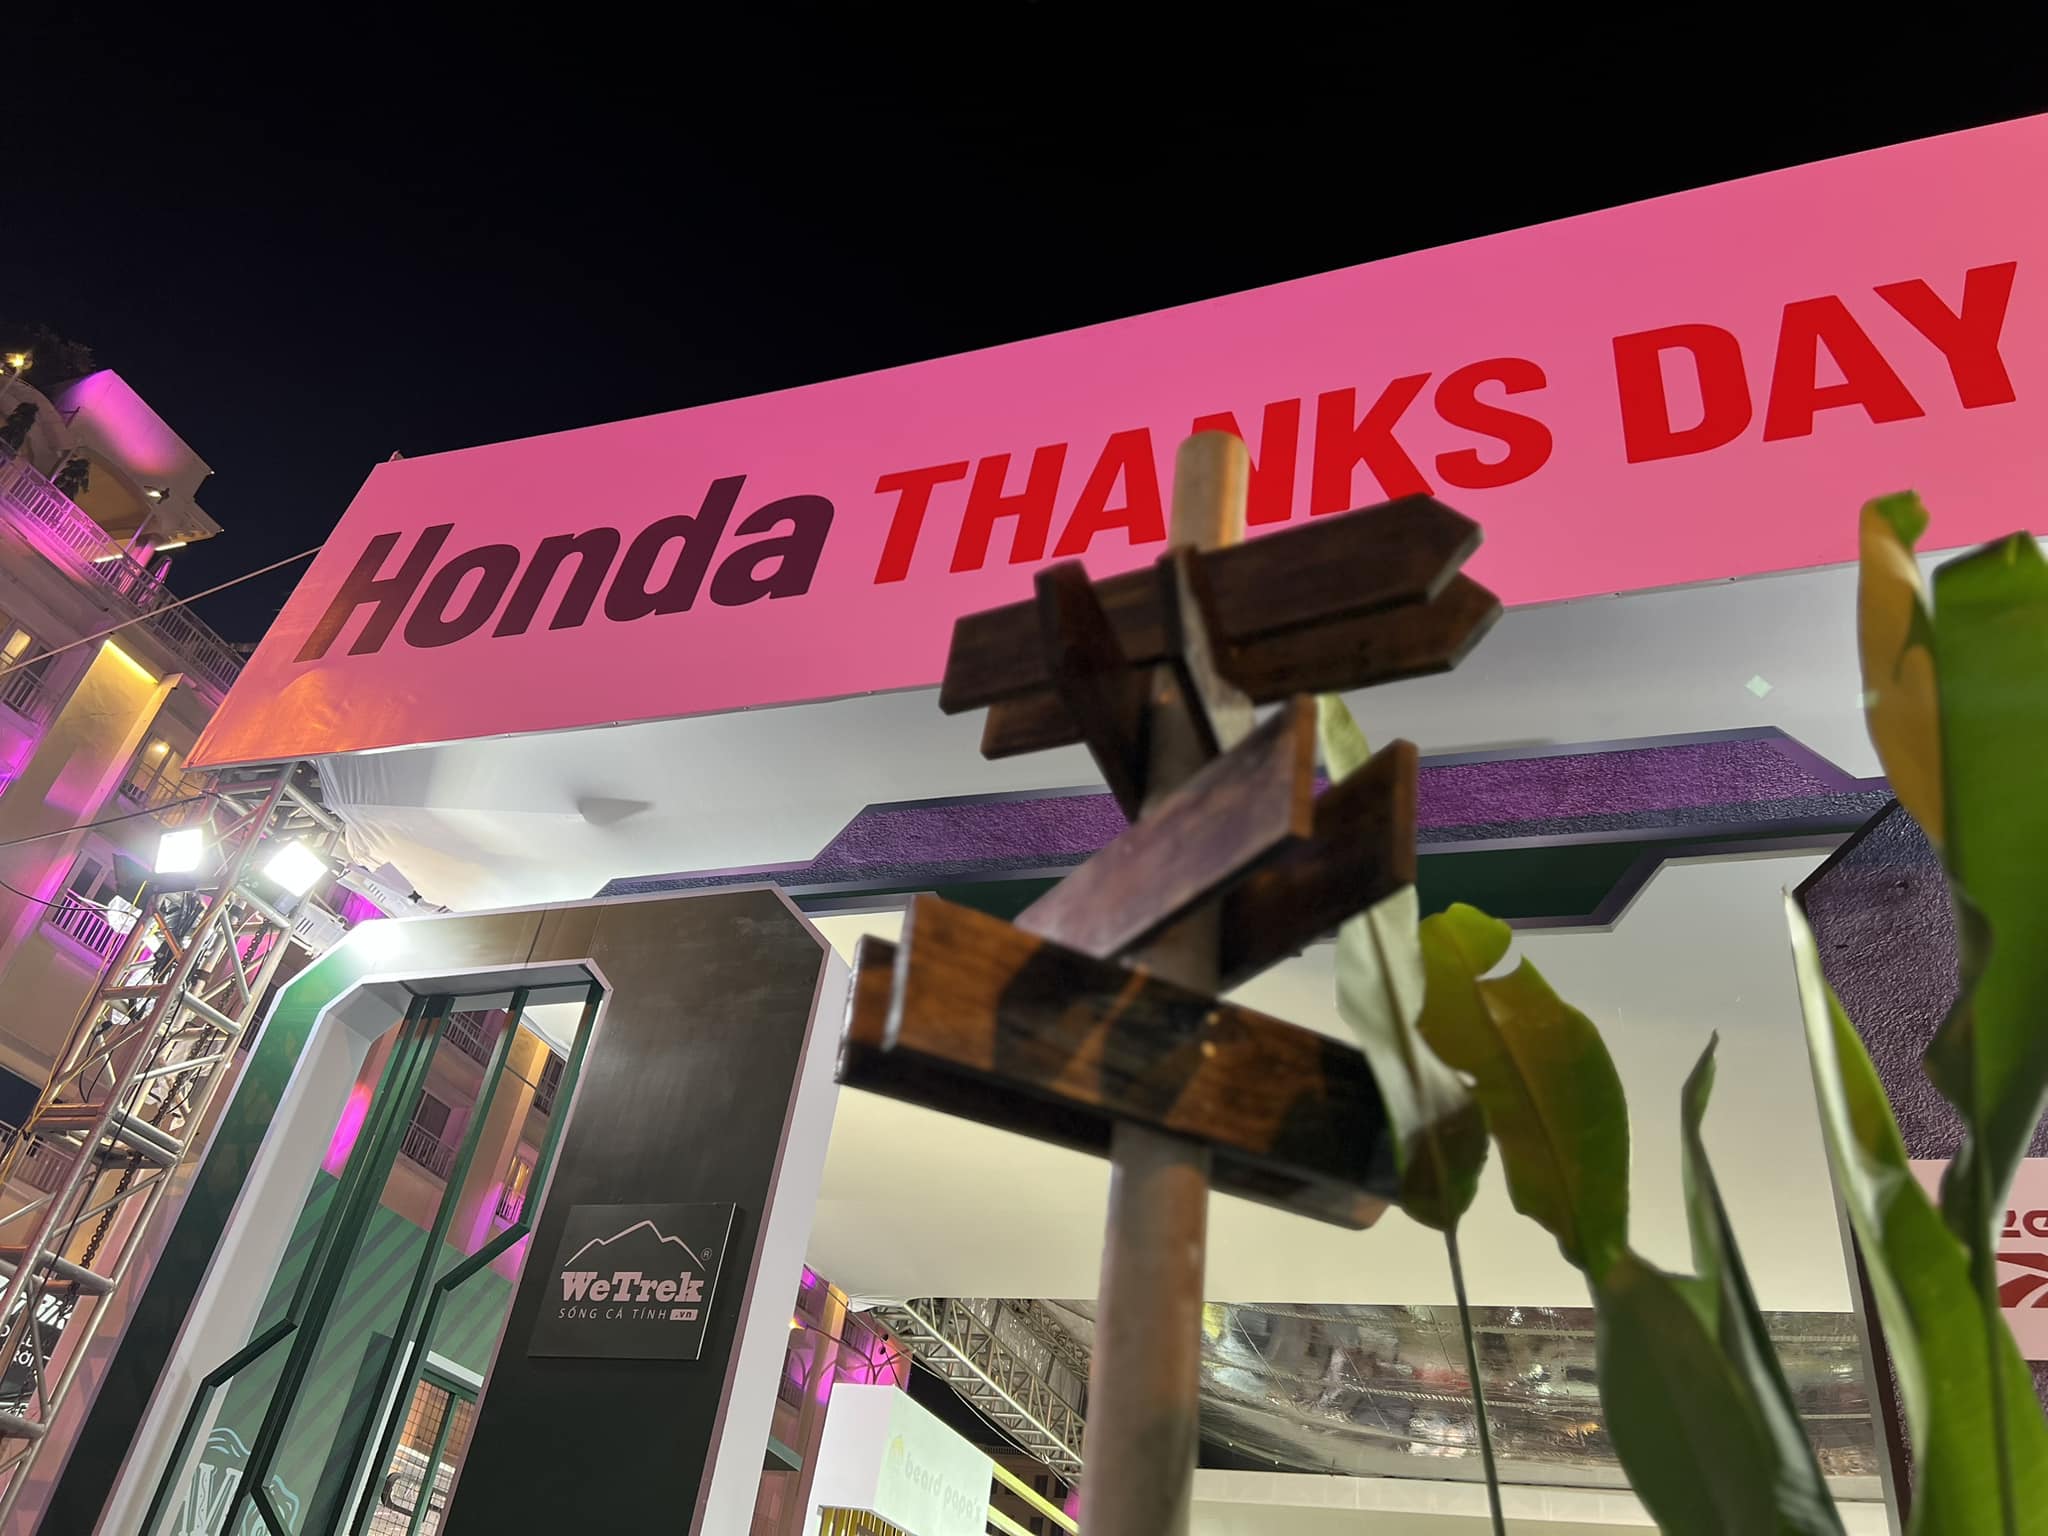 Có thể là hình ảnh về văn bản cho biết ''Honda THA NKS DAY Vik WeTrek "''